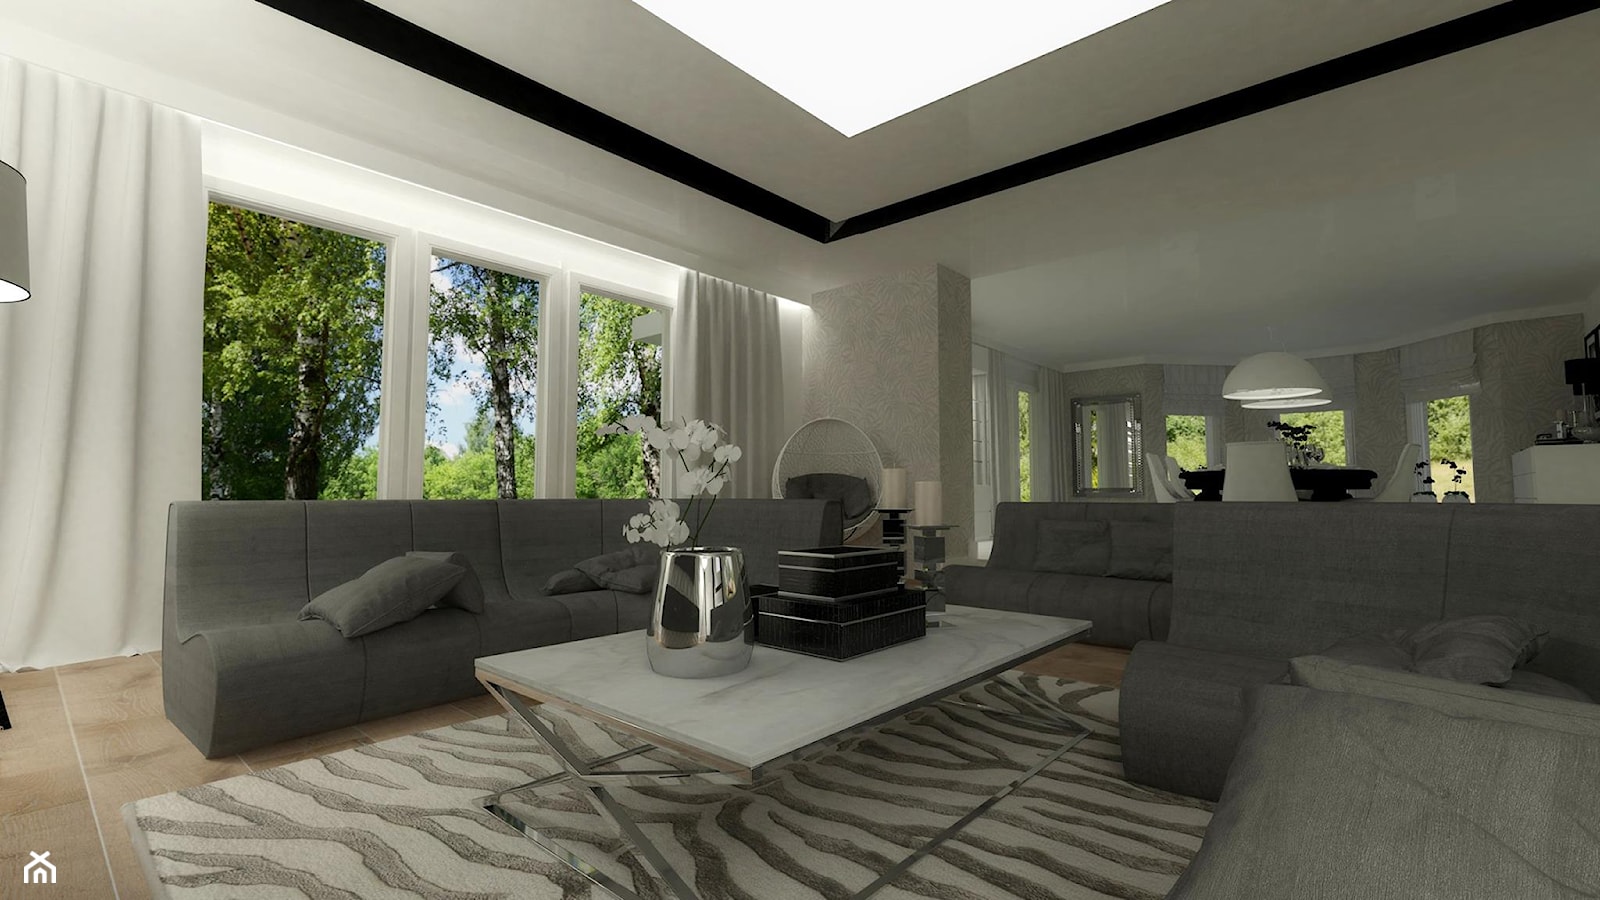 Dom jednorodzinny w Kolumnie - Duży szary salon, styl glamour - zdjęcie od Am Design Studio projektowania wnętrz - Homebook